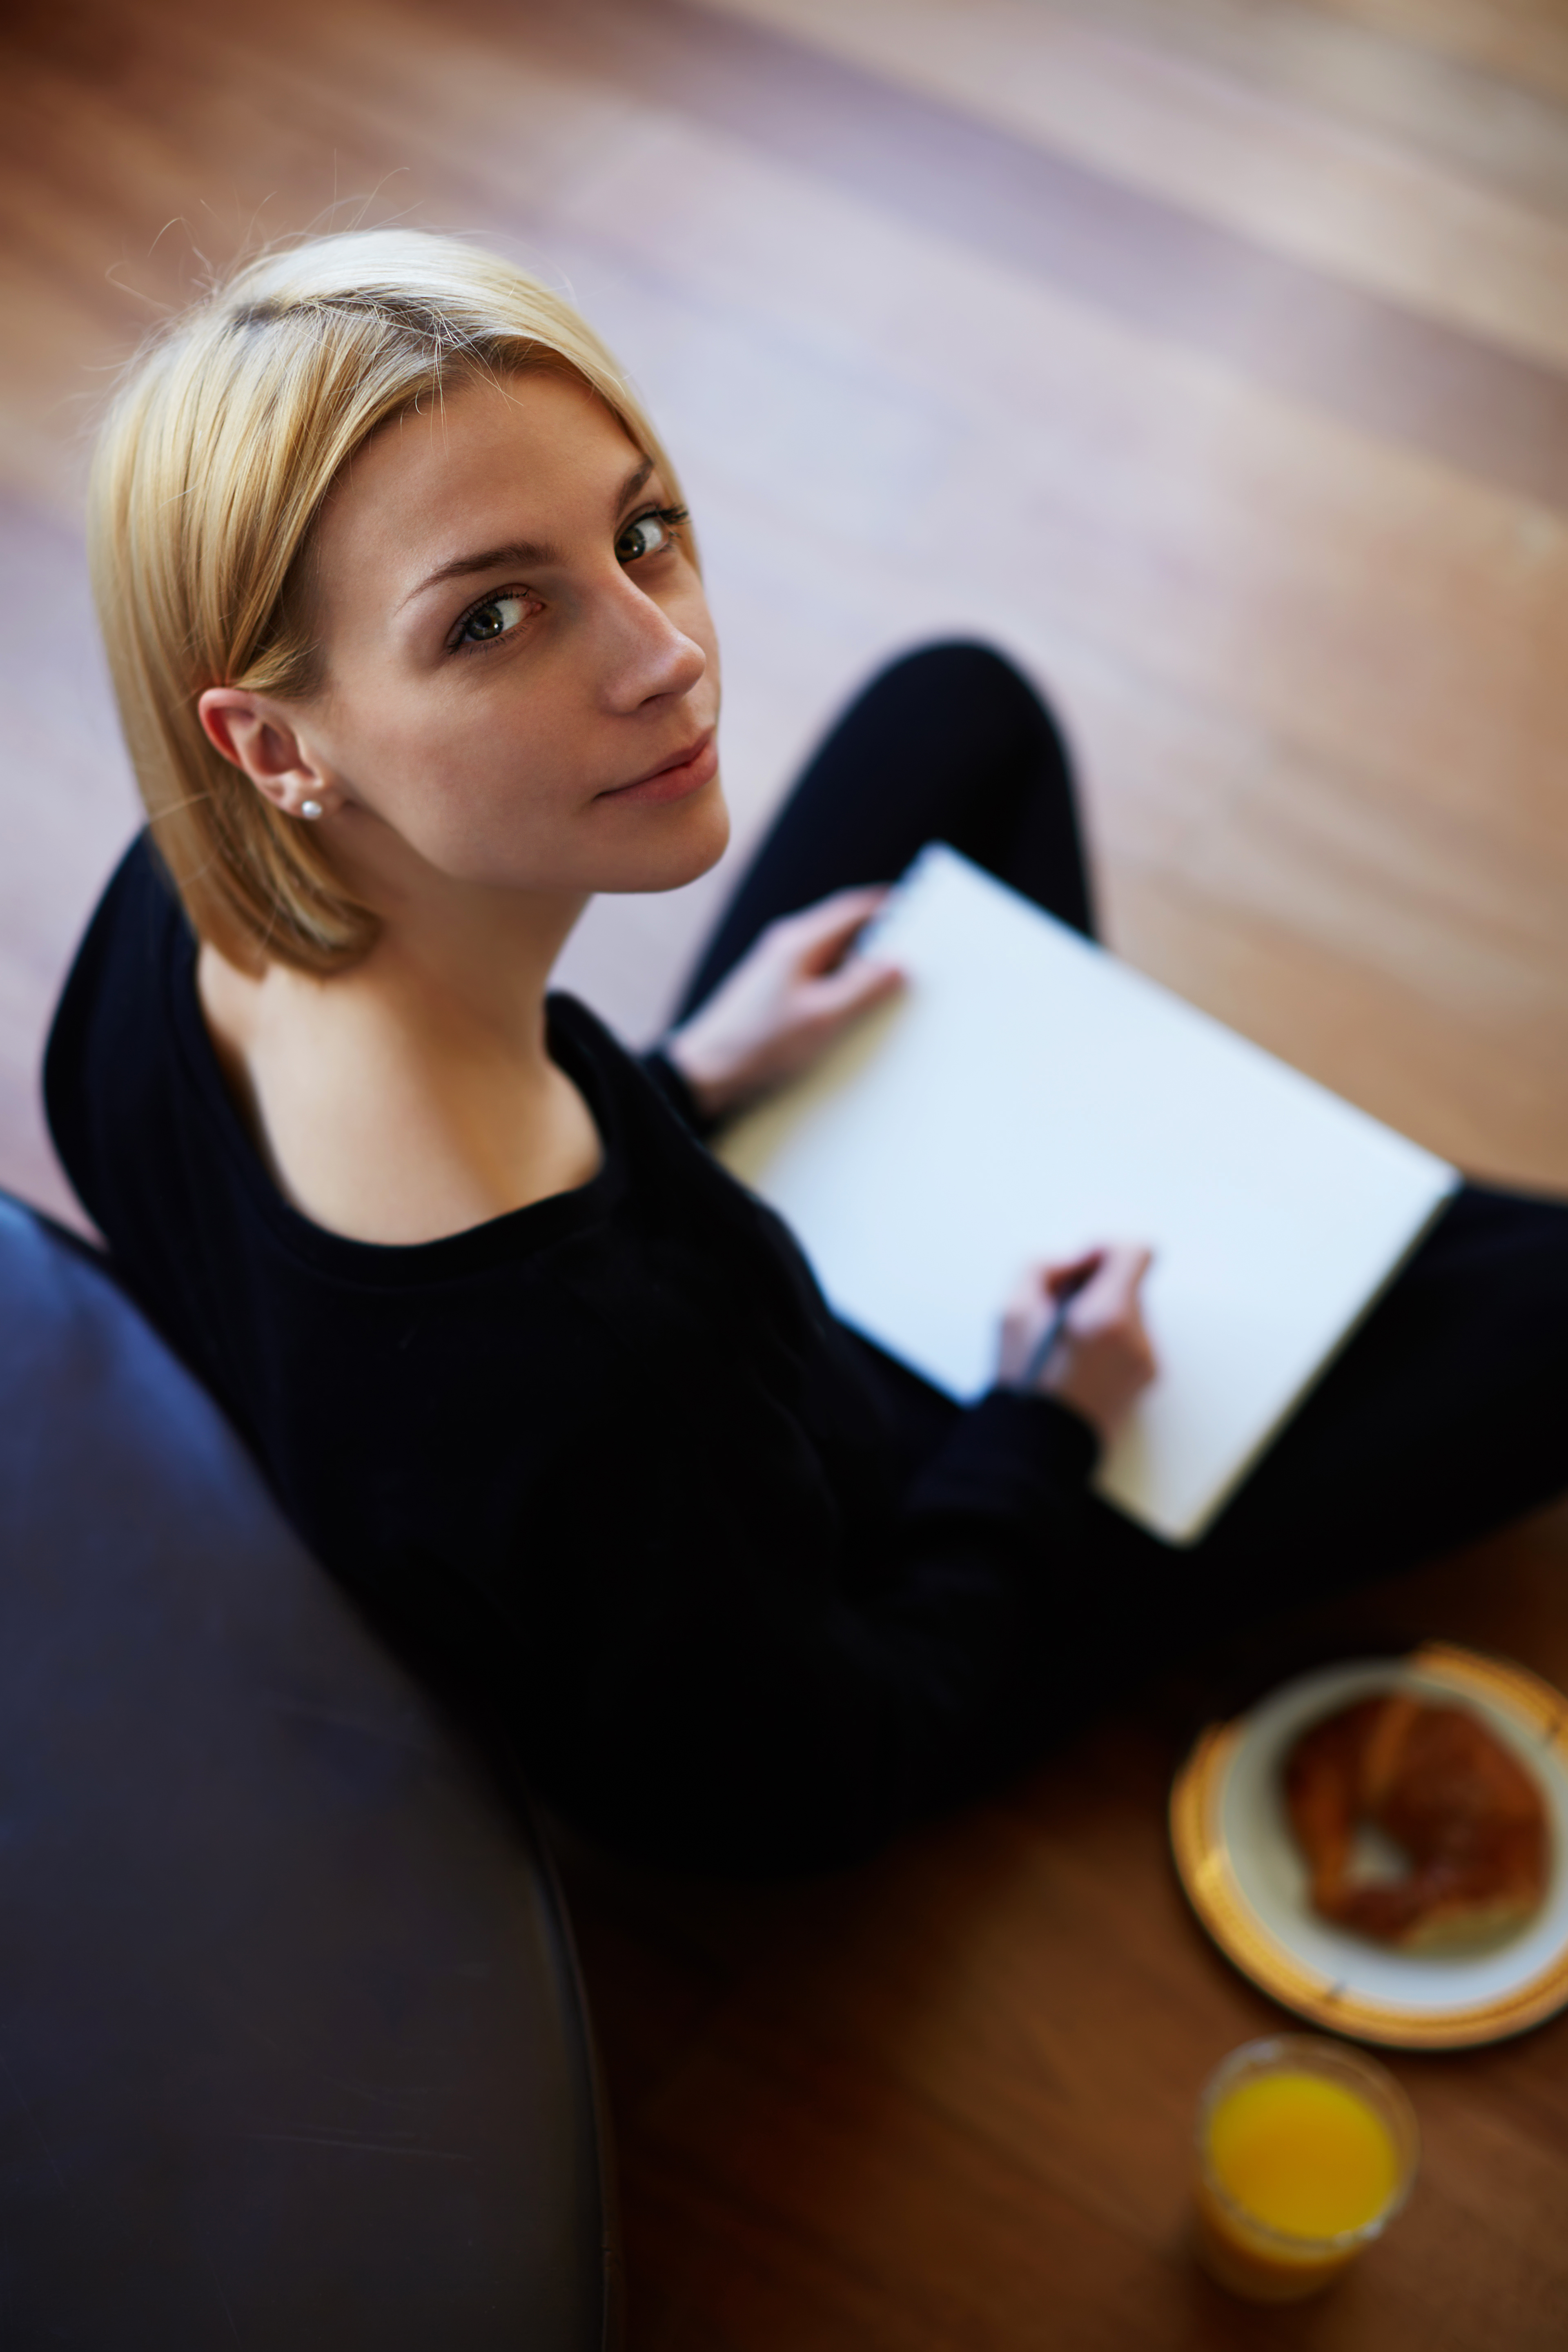 Vista superior de una joven rubia dibujando en un papel sentada en el suelo del salón | Fuente: Shutterstock.com